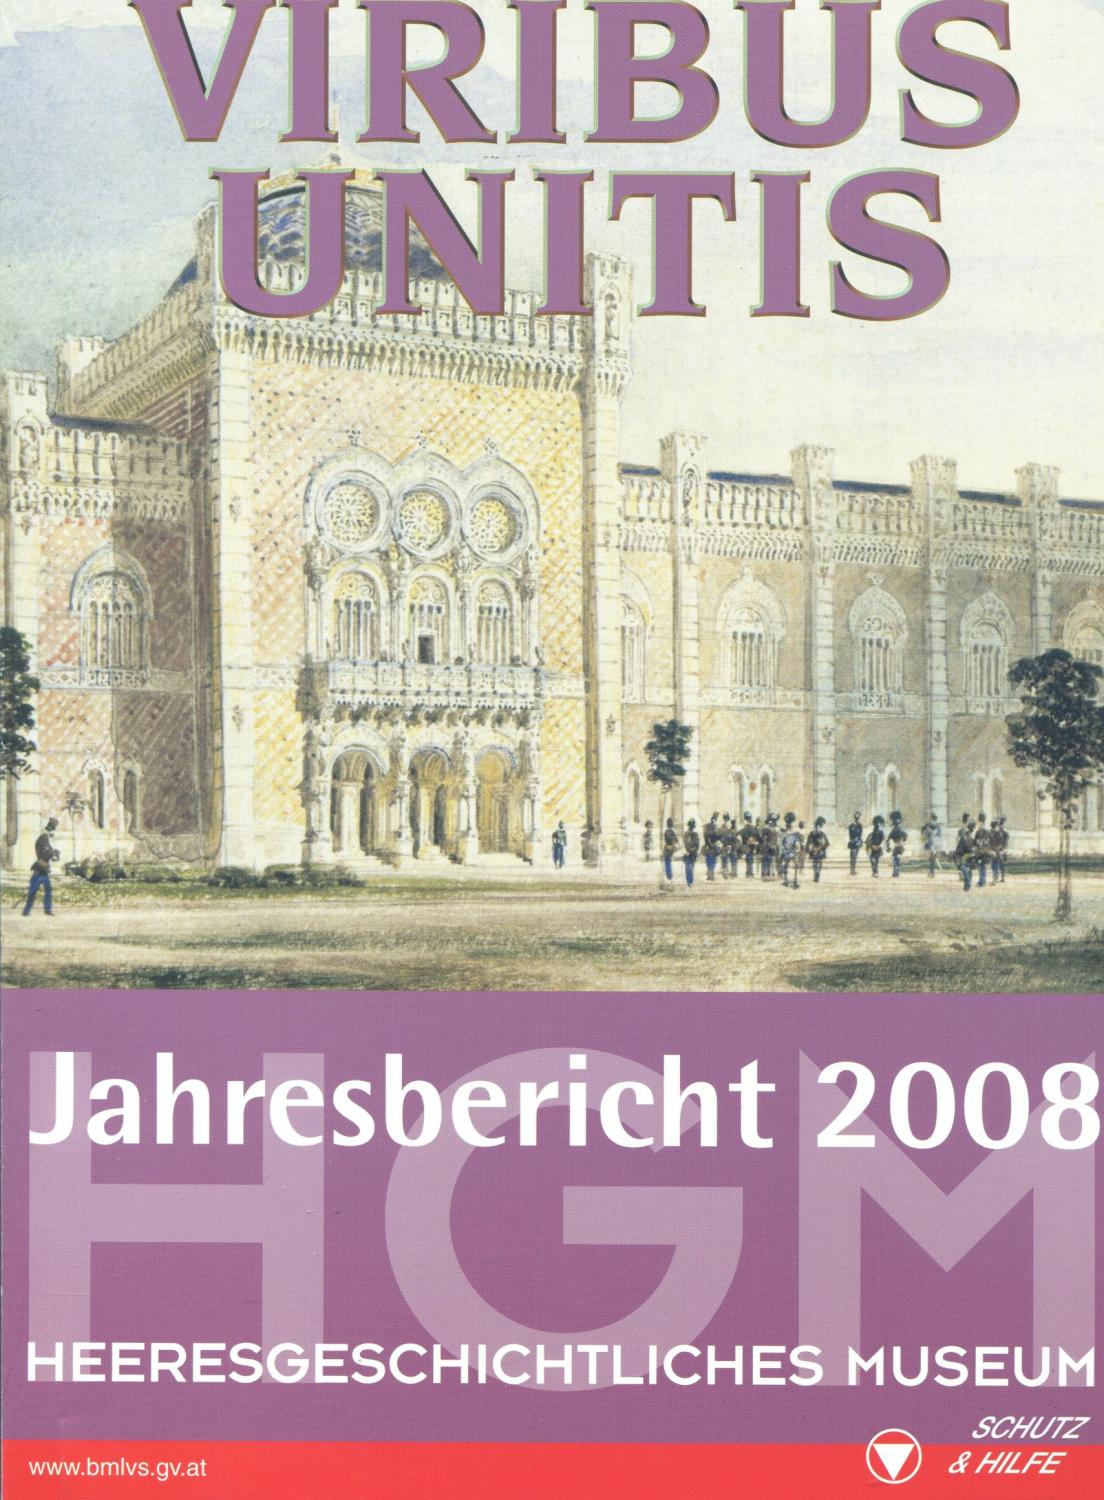 Jahresbericht 2008 des Heeresgeschichtlichen Museums: Viribus unitis